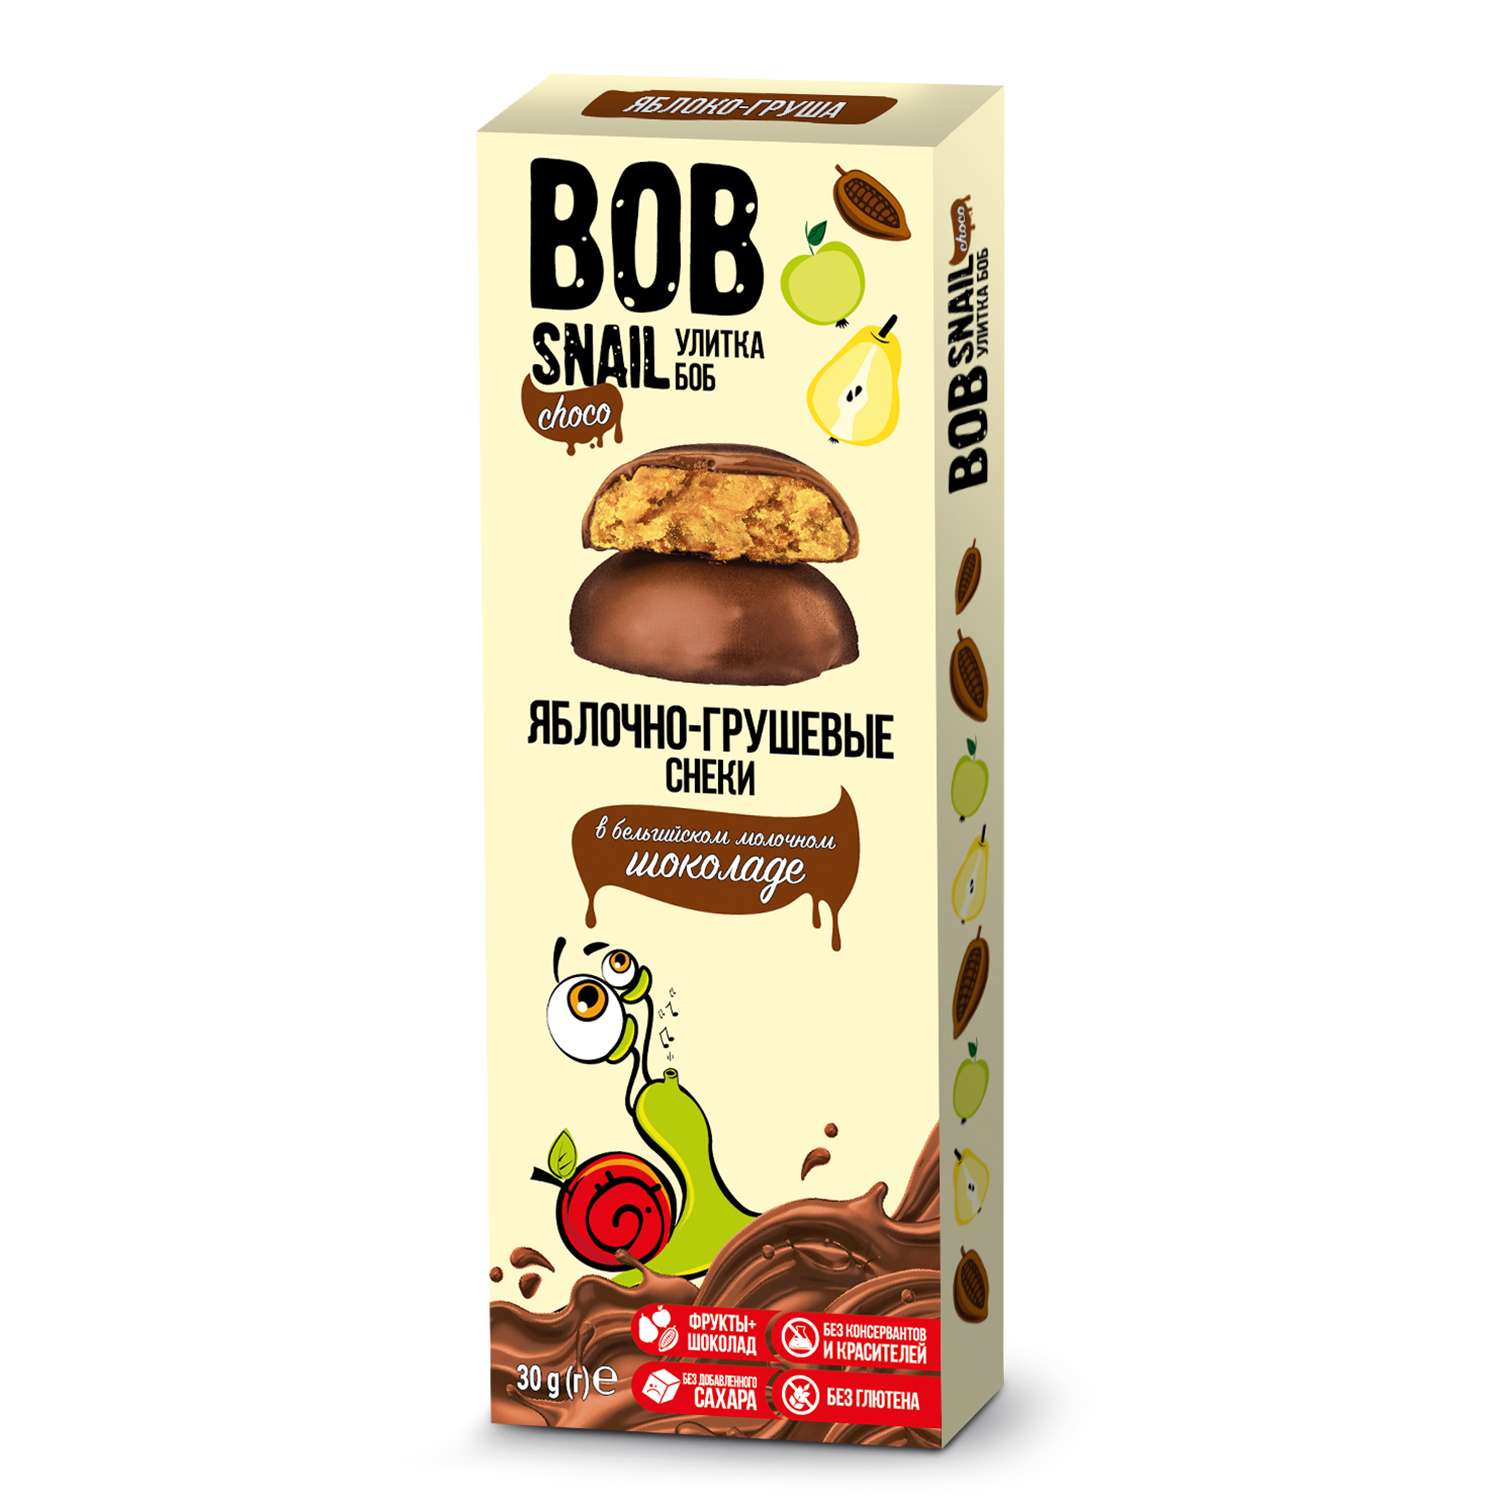 Снек Bob Snail Фруктовый яблочно-грушевый в молочном бельгийском шоколаде без добавленного сахара 30г - фото 1